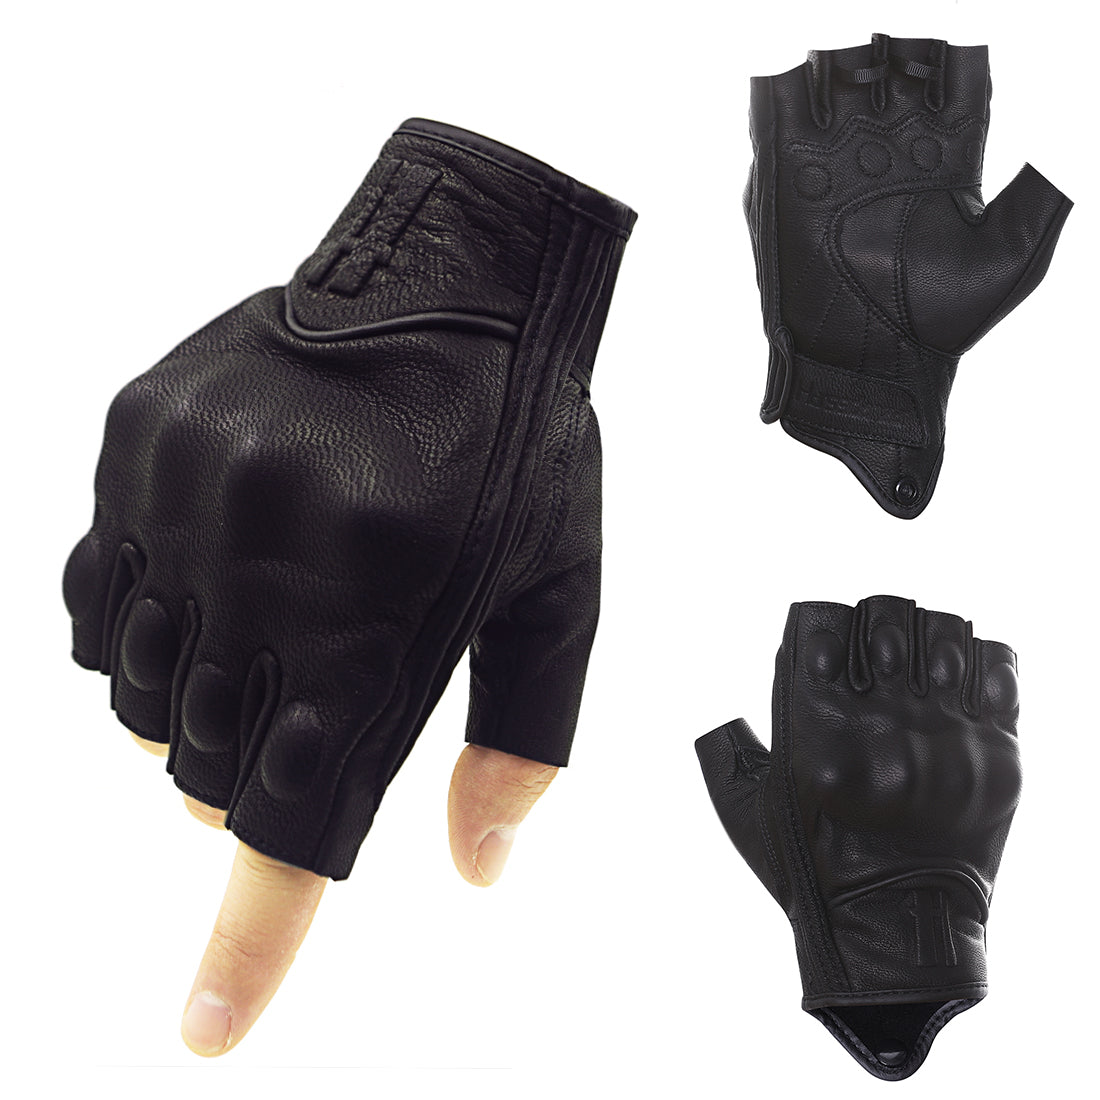 Fingerless Work Gloves for Men Utility Padded Half Finger Driving